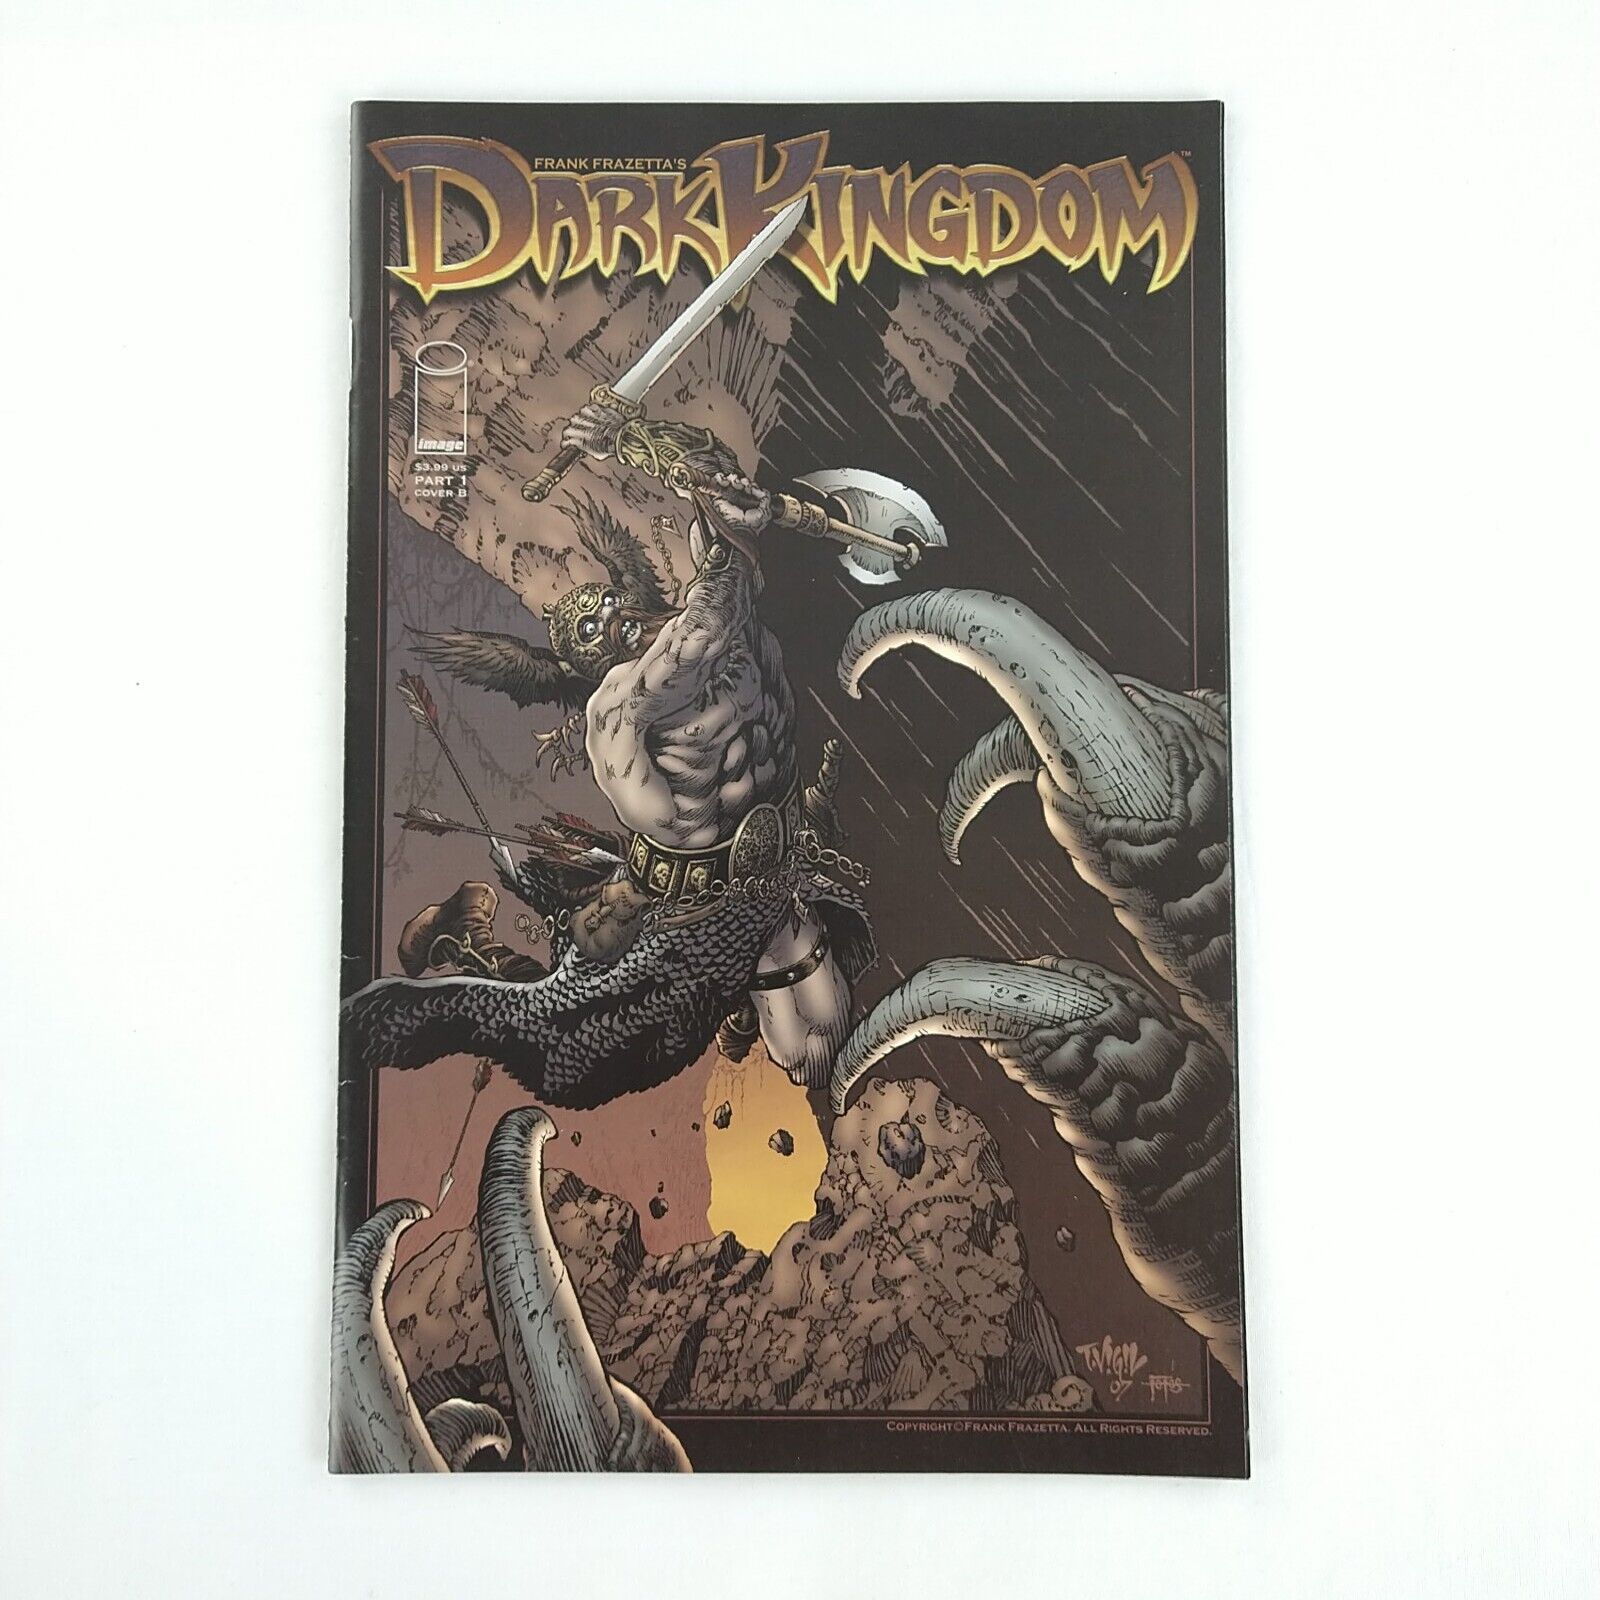 Frank Frazetta's Dark Kingdom #1 (2008 Image Comics)